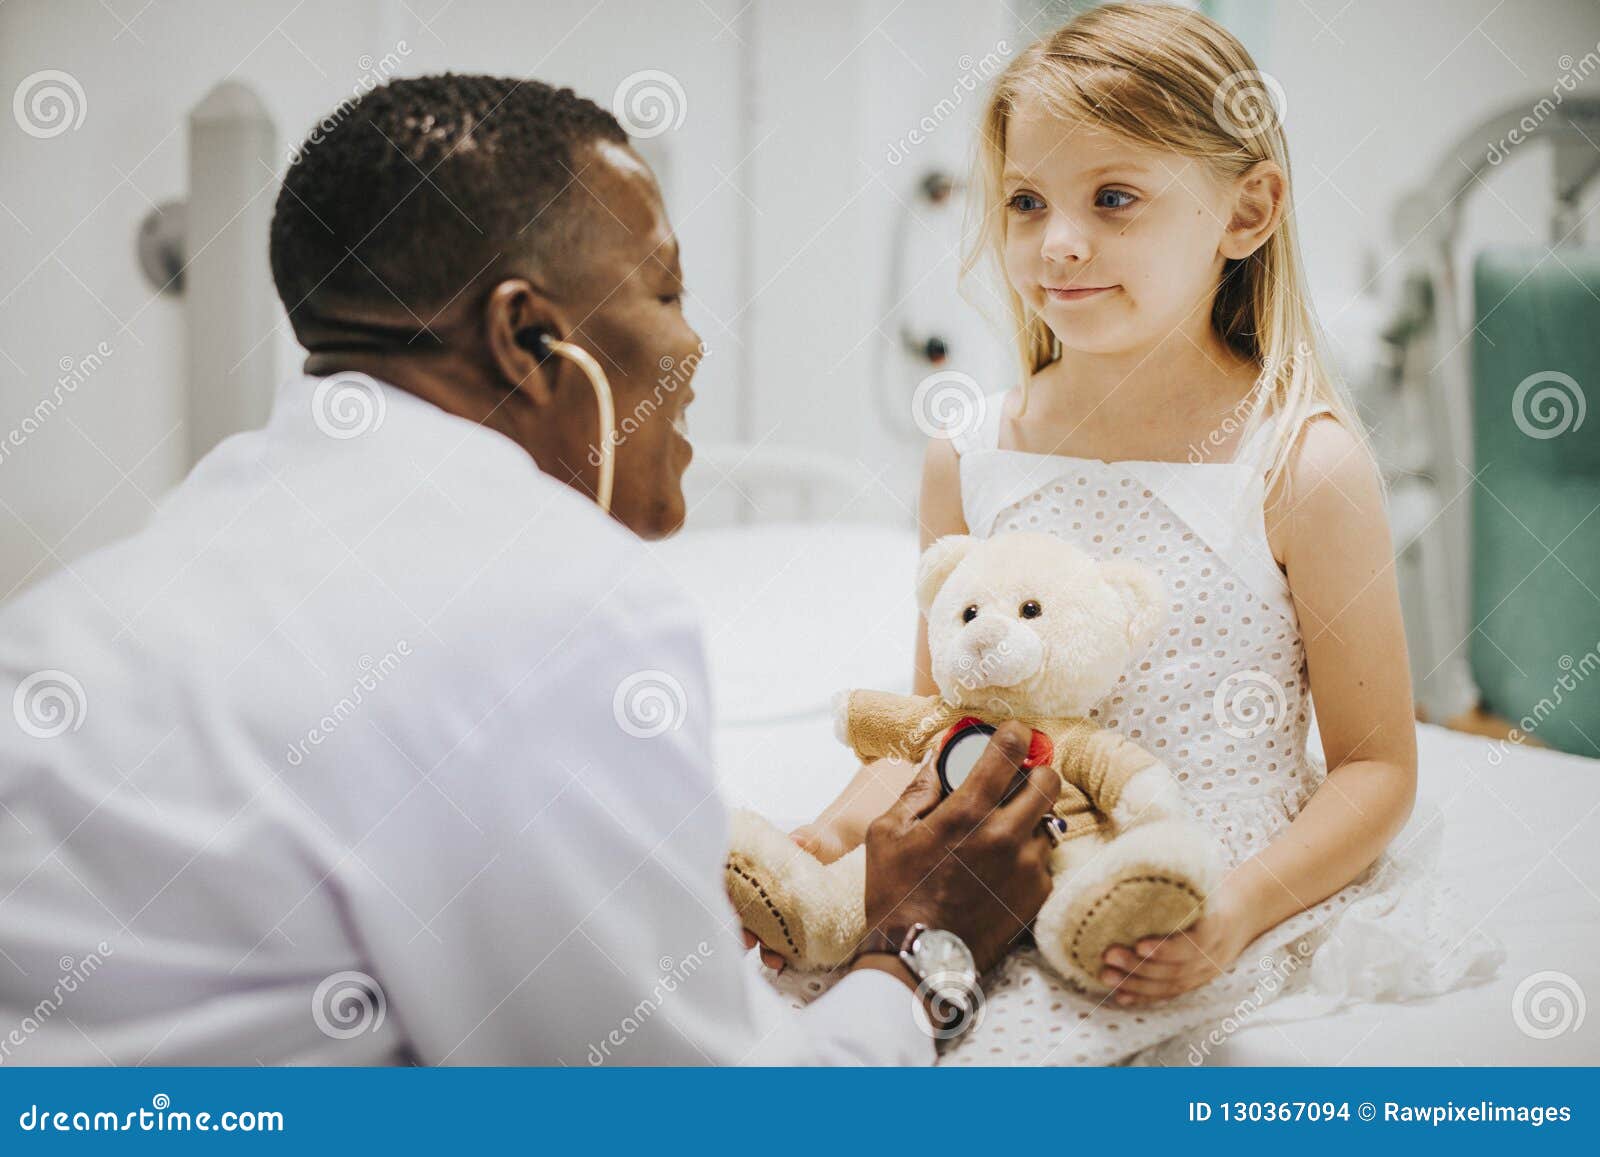 doctor doing a health checkup on a teddy bear